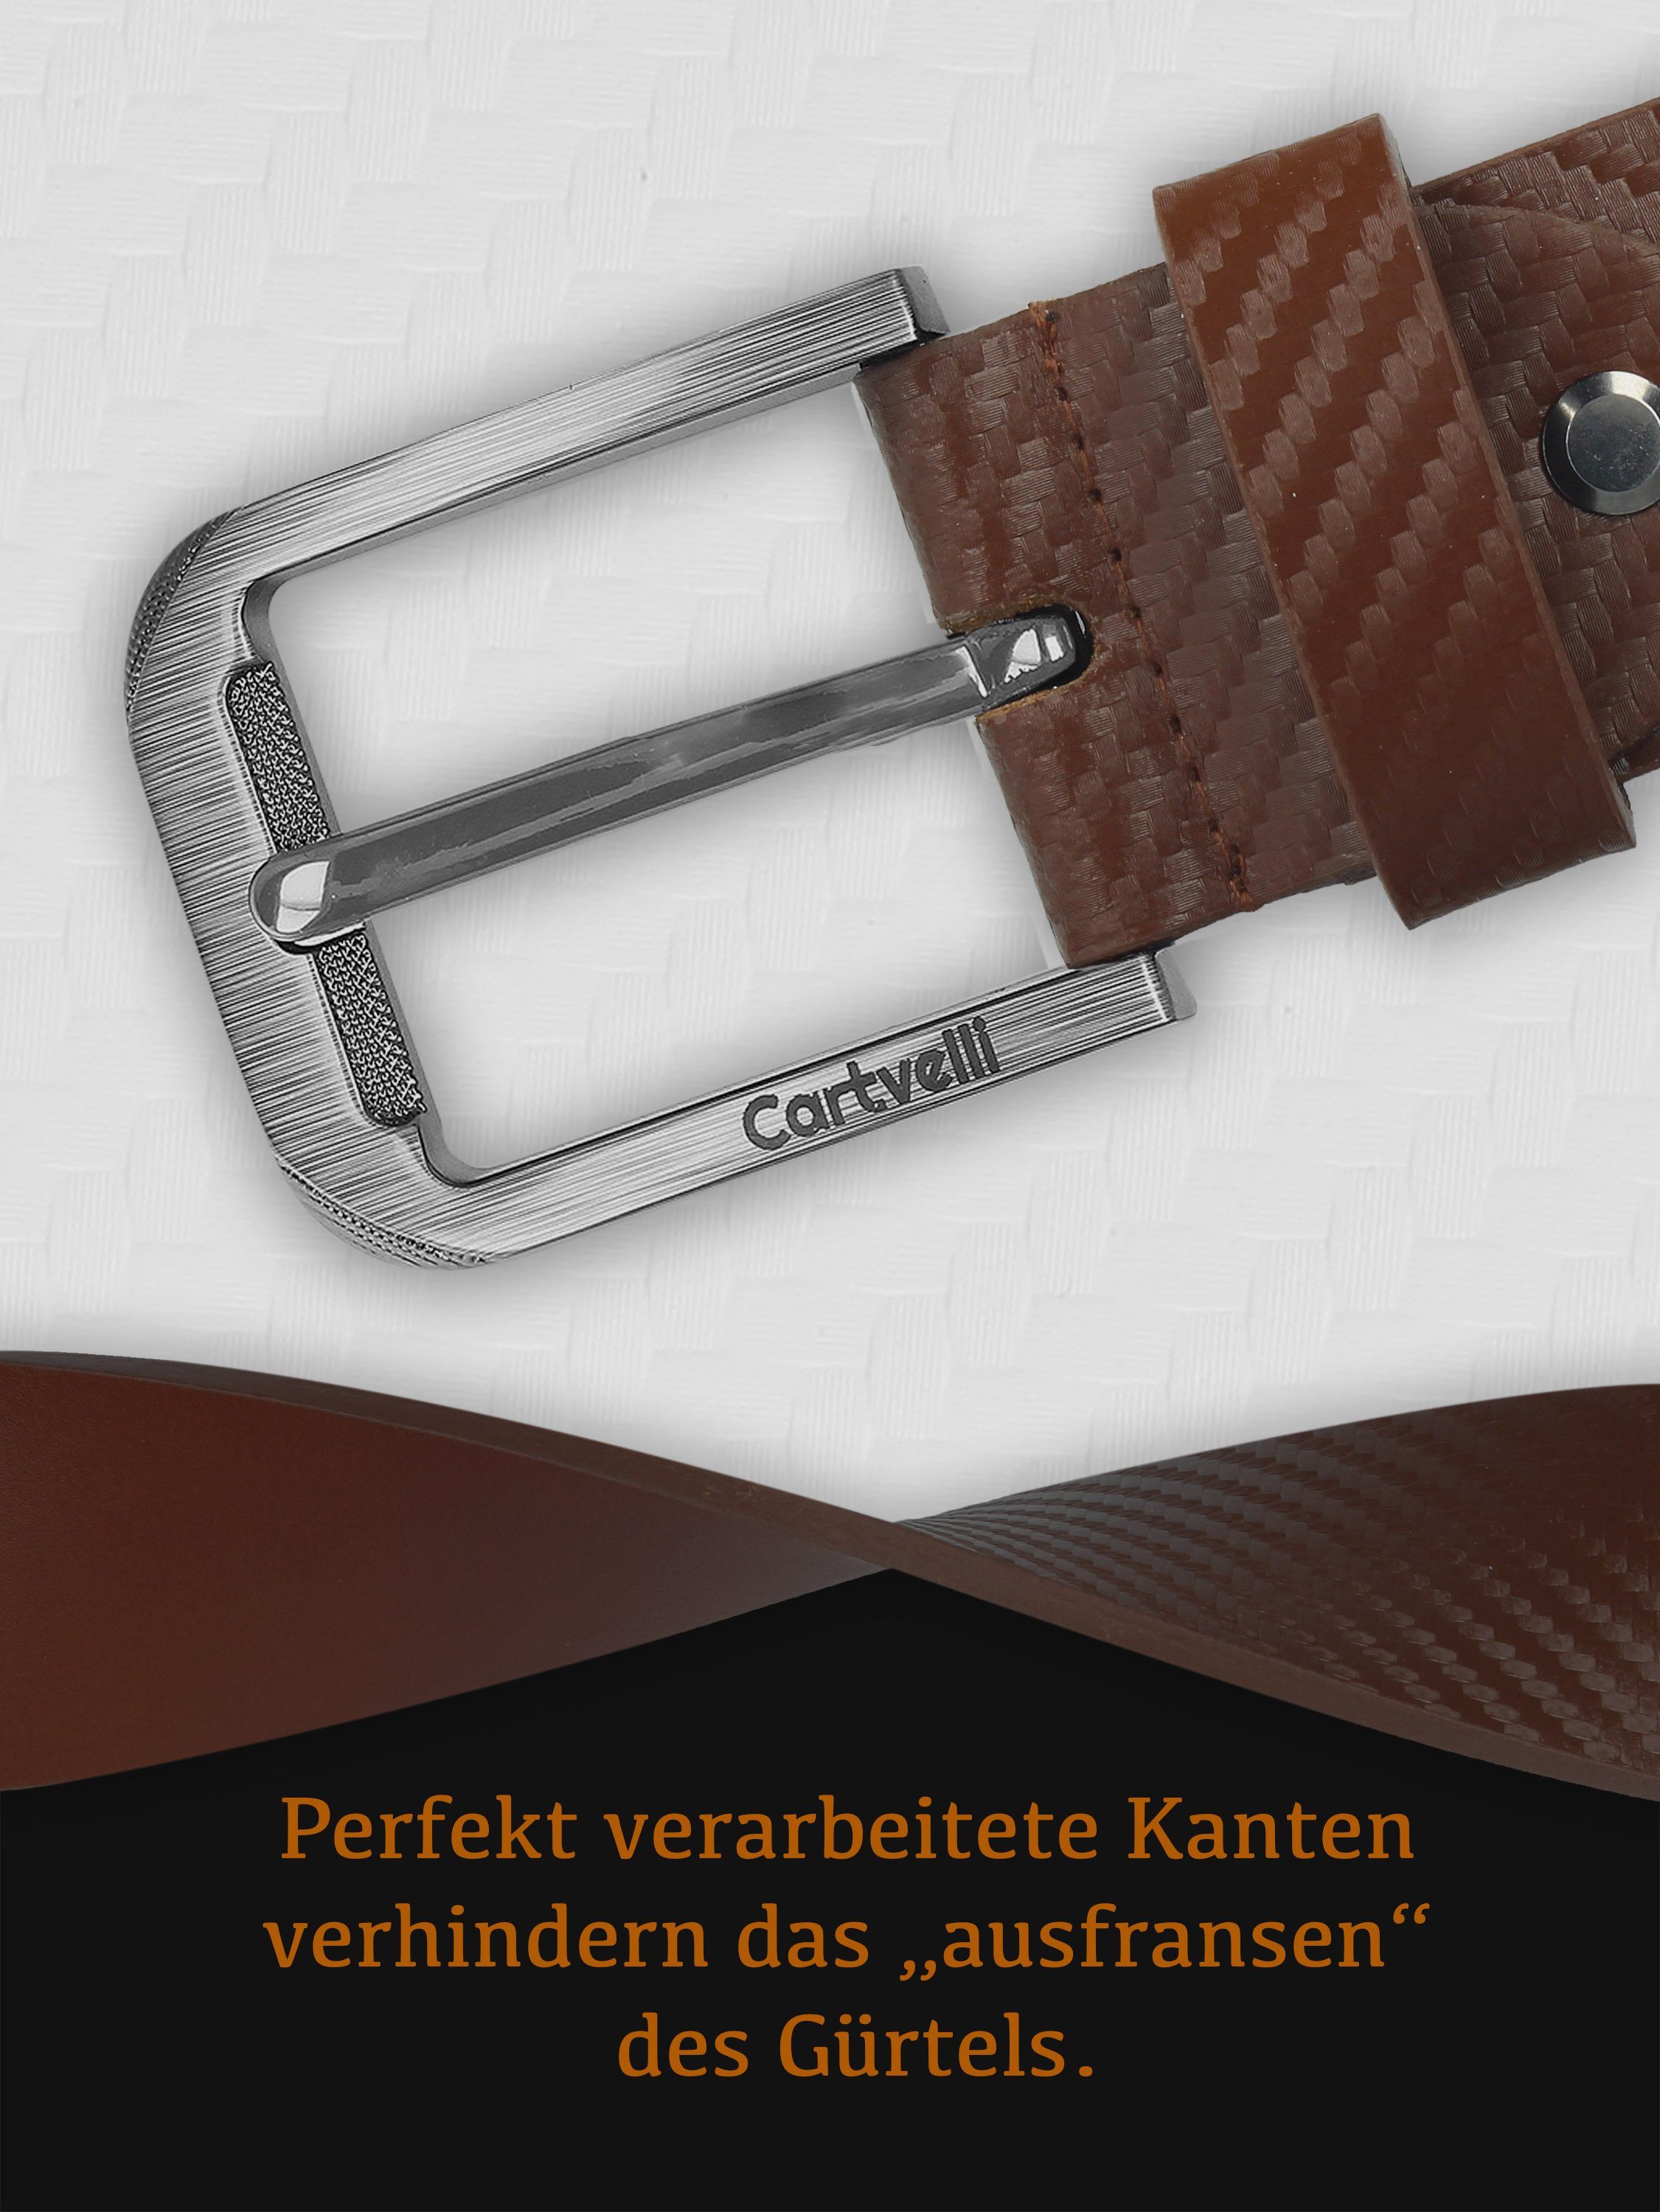 Made Braun wunderbarer Ledergürtel in mit Carbon Carbon Design Germany Farben) Schließe klassisch Geschenkbox edles mit Cartvelli Ledergürtel (3 Herren